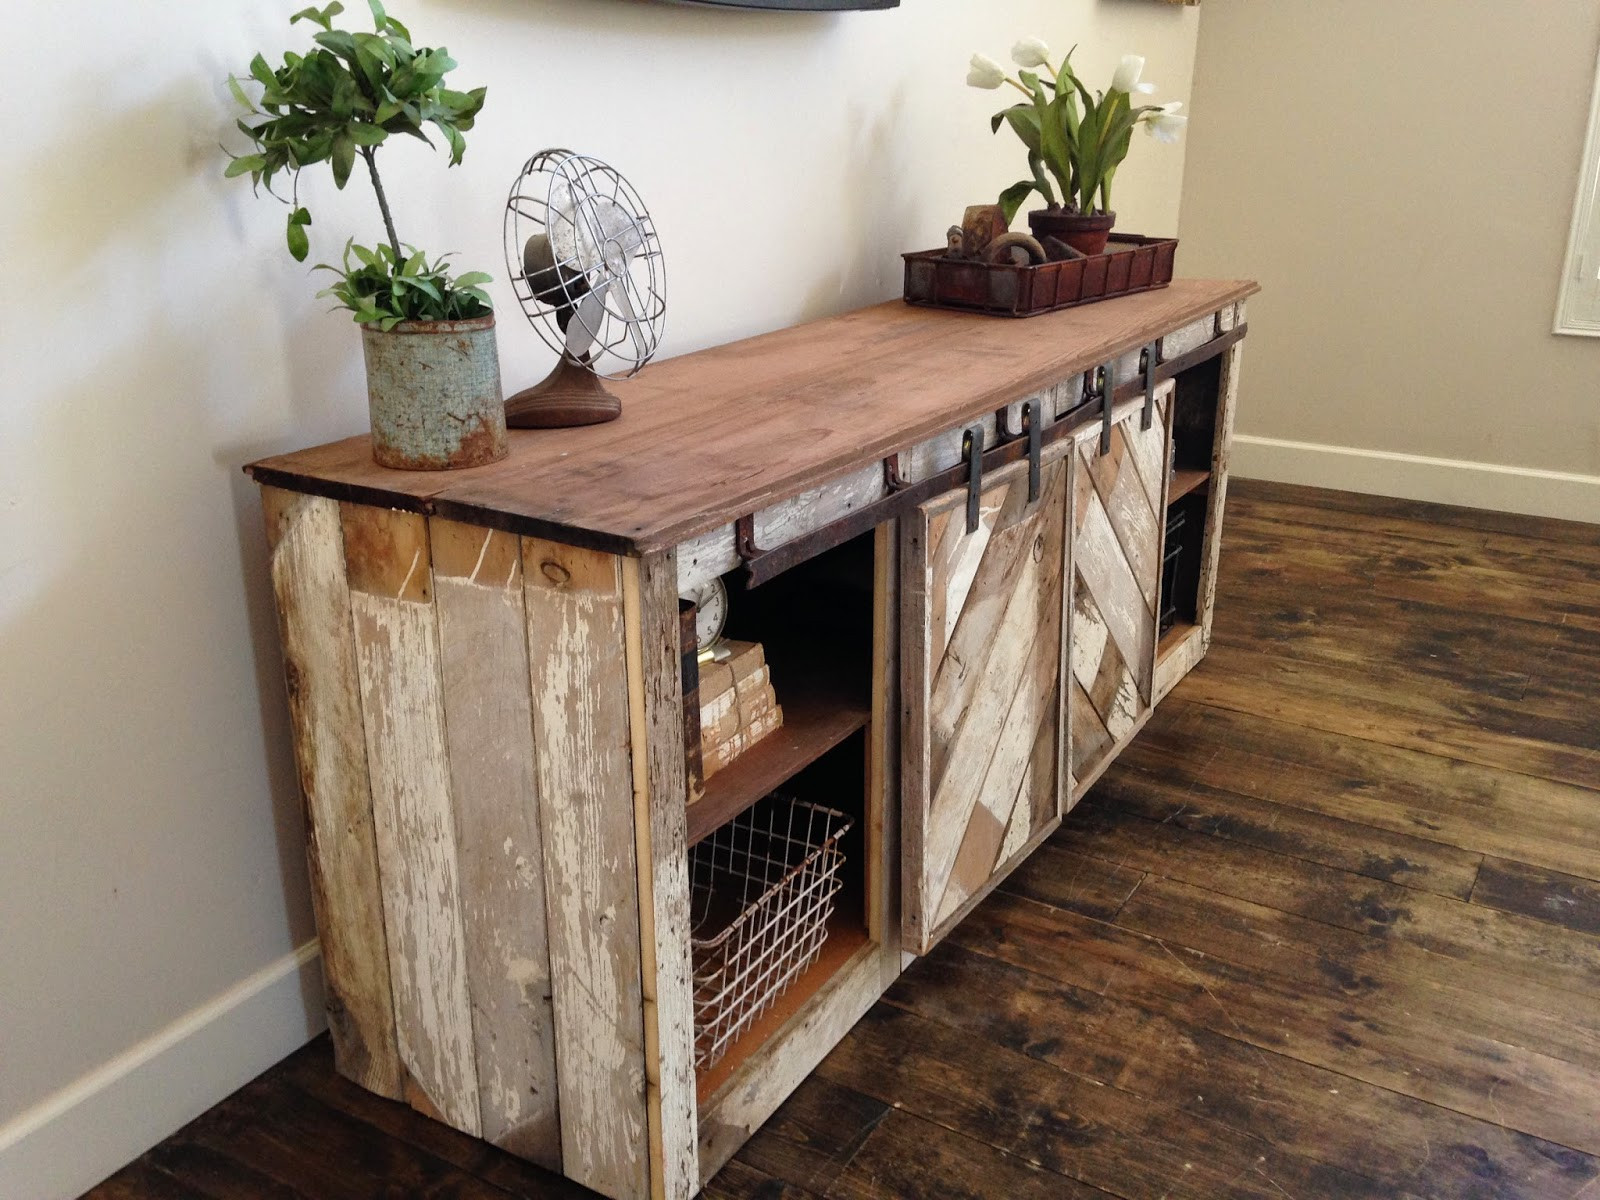 Barn Wood Furniture DIY
 Ana White